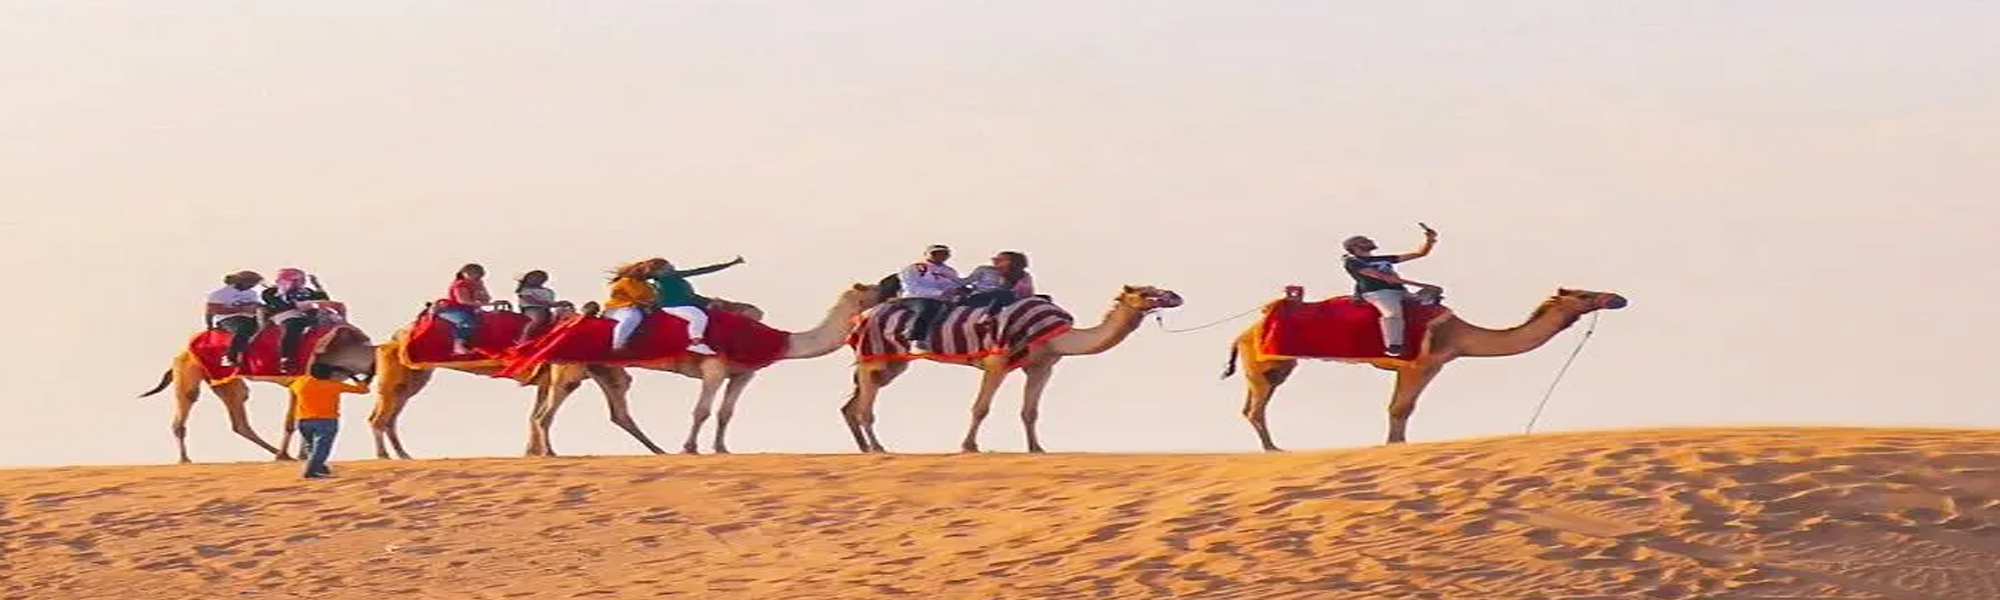 Camel Safari Budget Tours in Rajasthan 